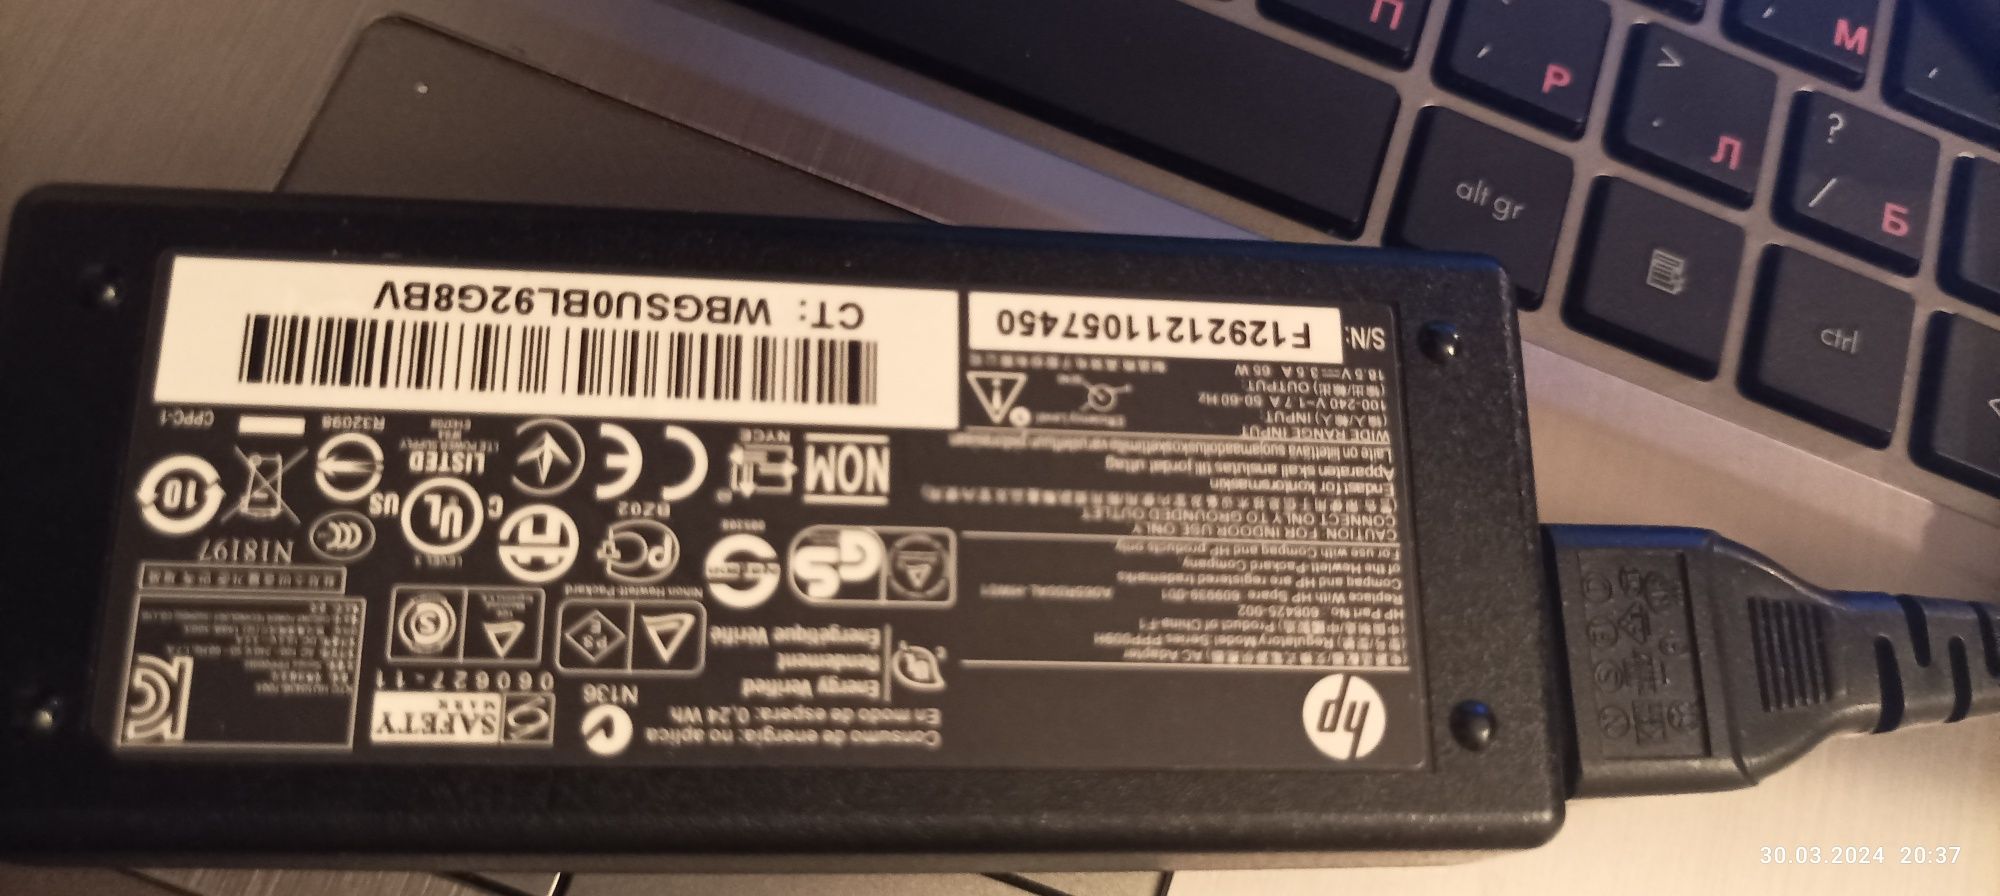 Laptop HP probook 4540s